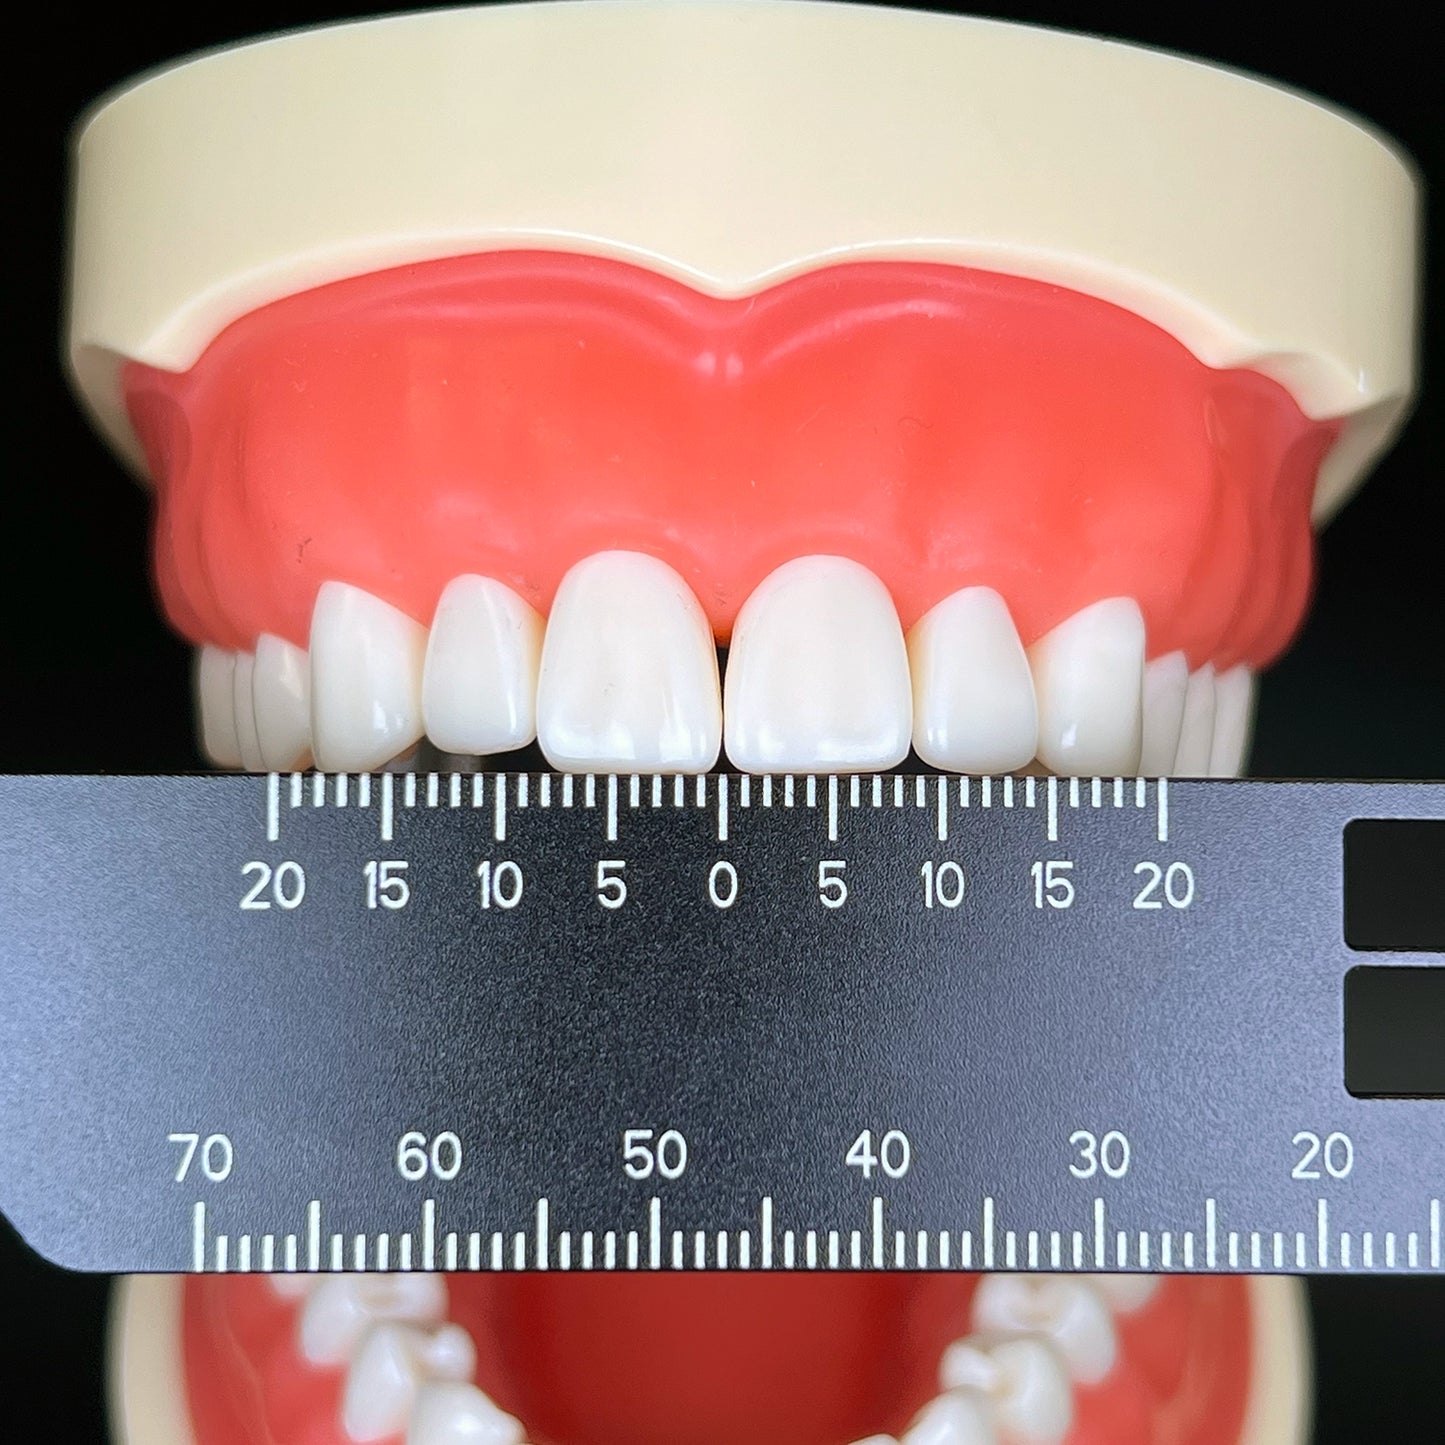 사진술과 치과를 위한 치과 정밀도 측정 눈금자 의학 공구